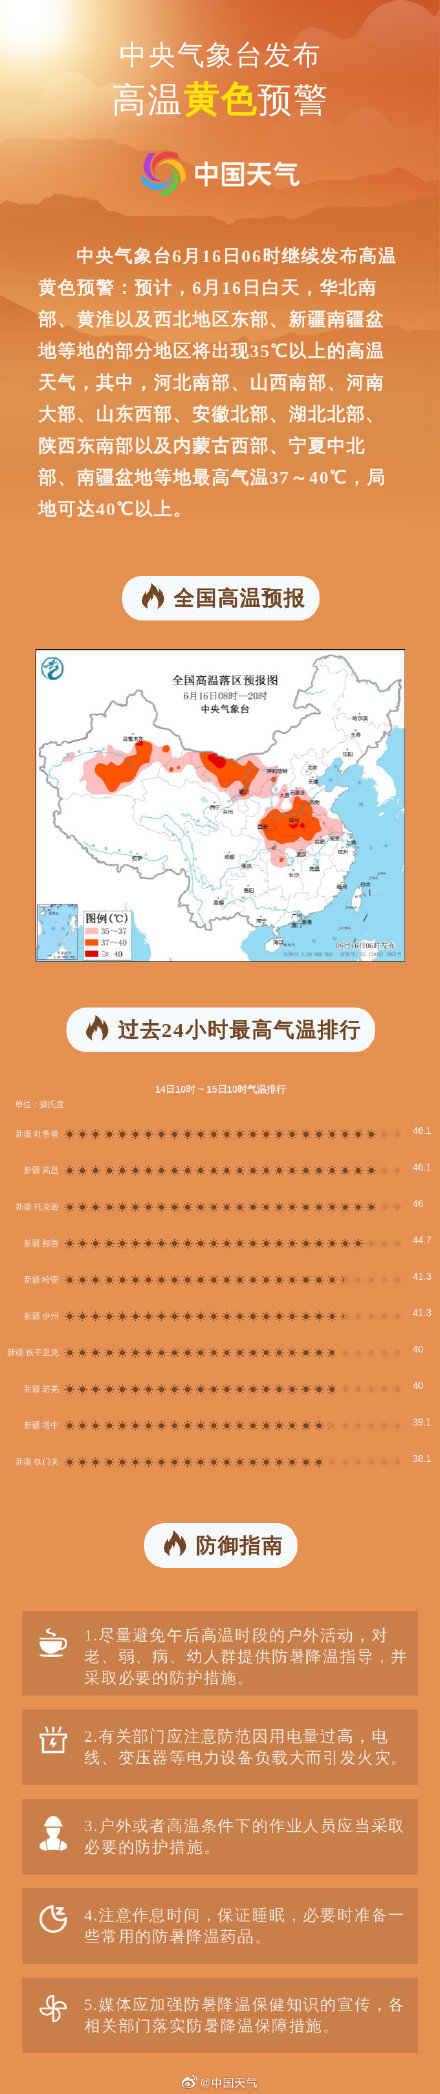 高温预警继续发布！河南陕西等10省区最高气温将超37℃